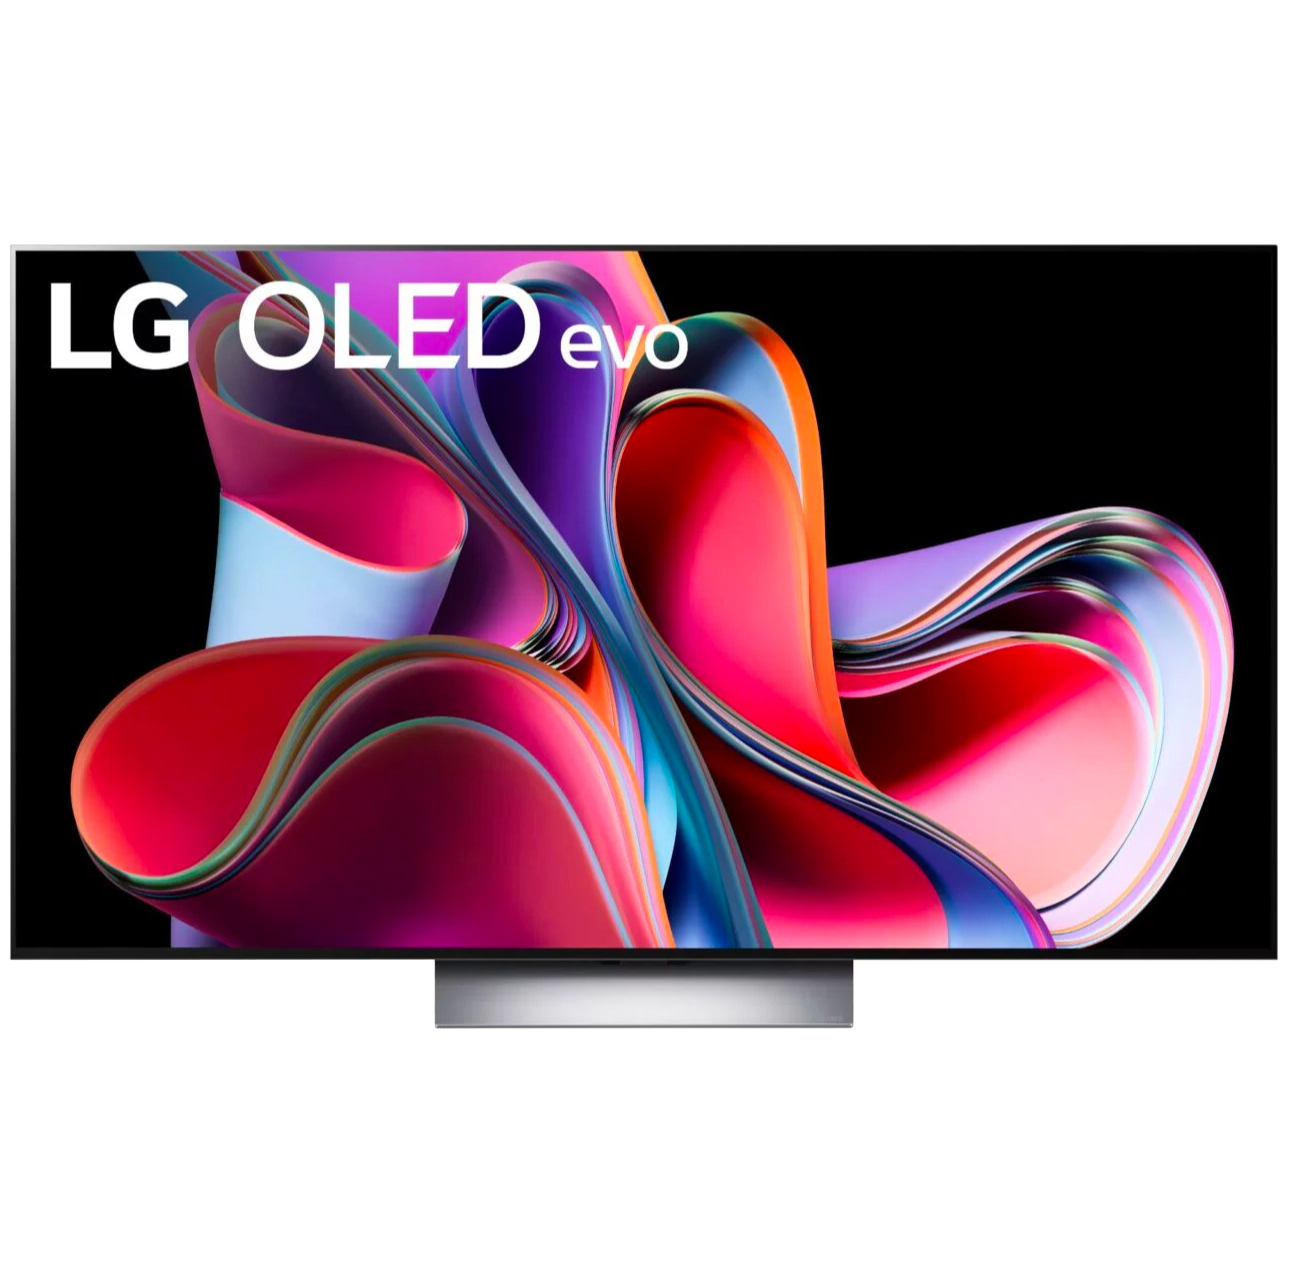 LG C3 OLED TV on white background